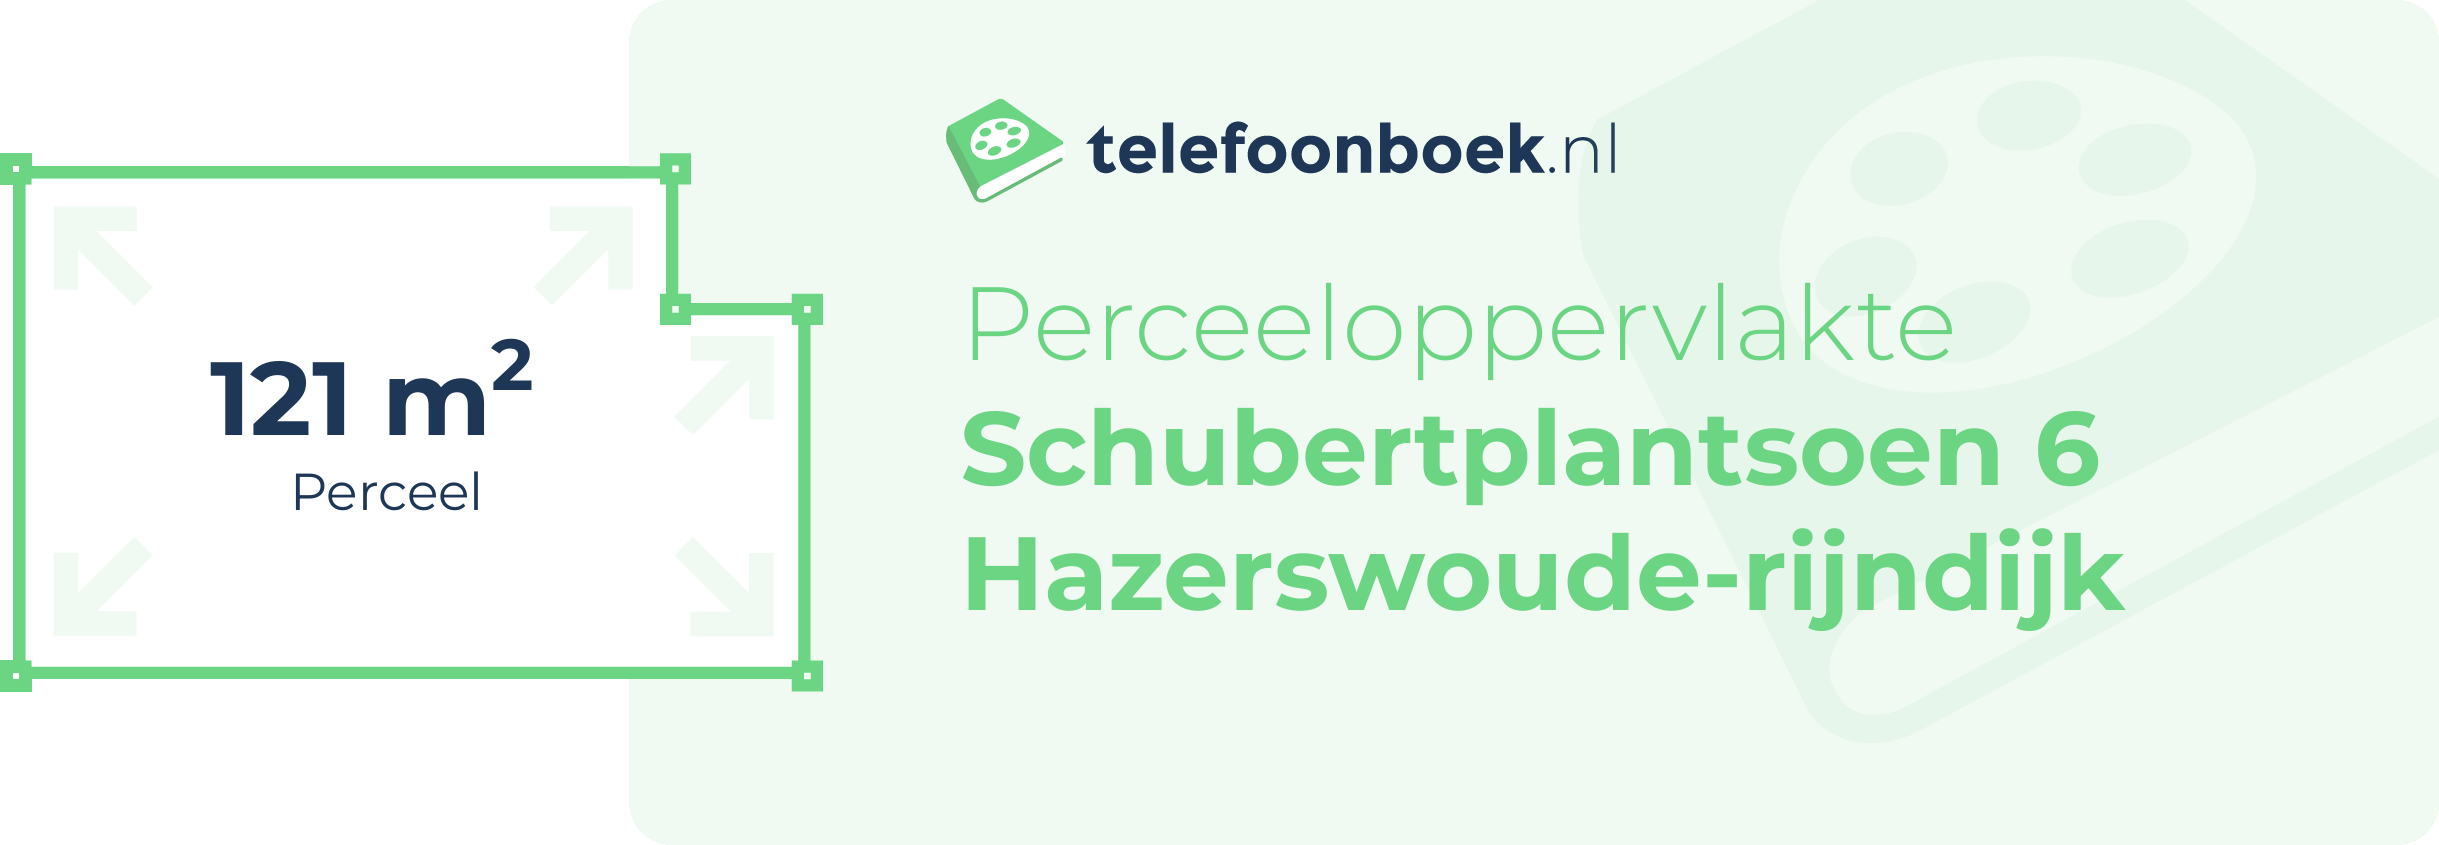 Perceeloppervlakte Schubertplantsoen 6 Hazerswoude-Rijndijk